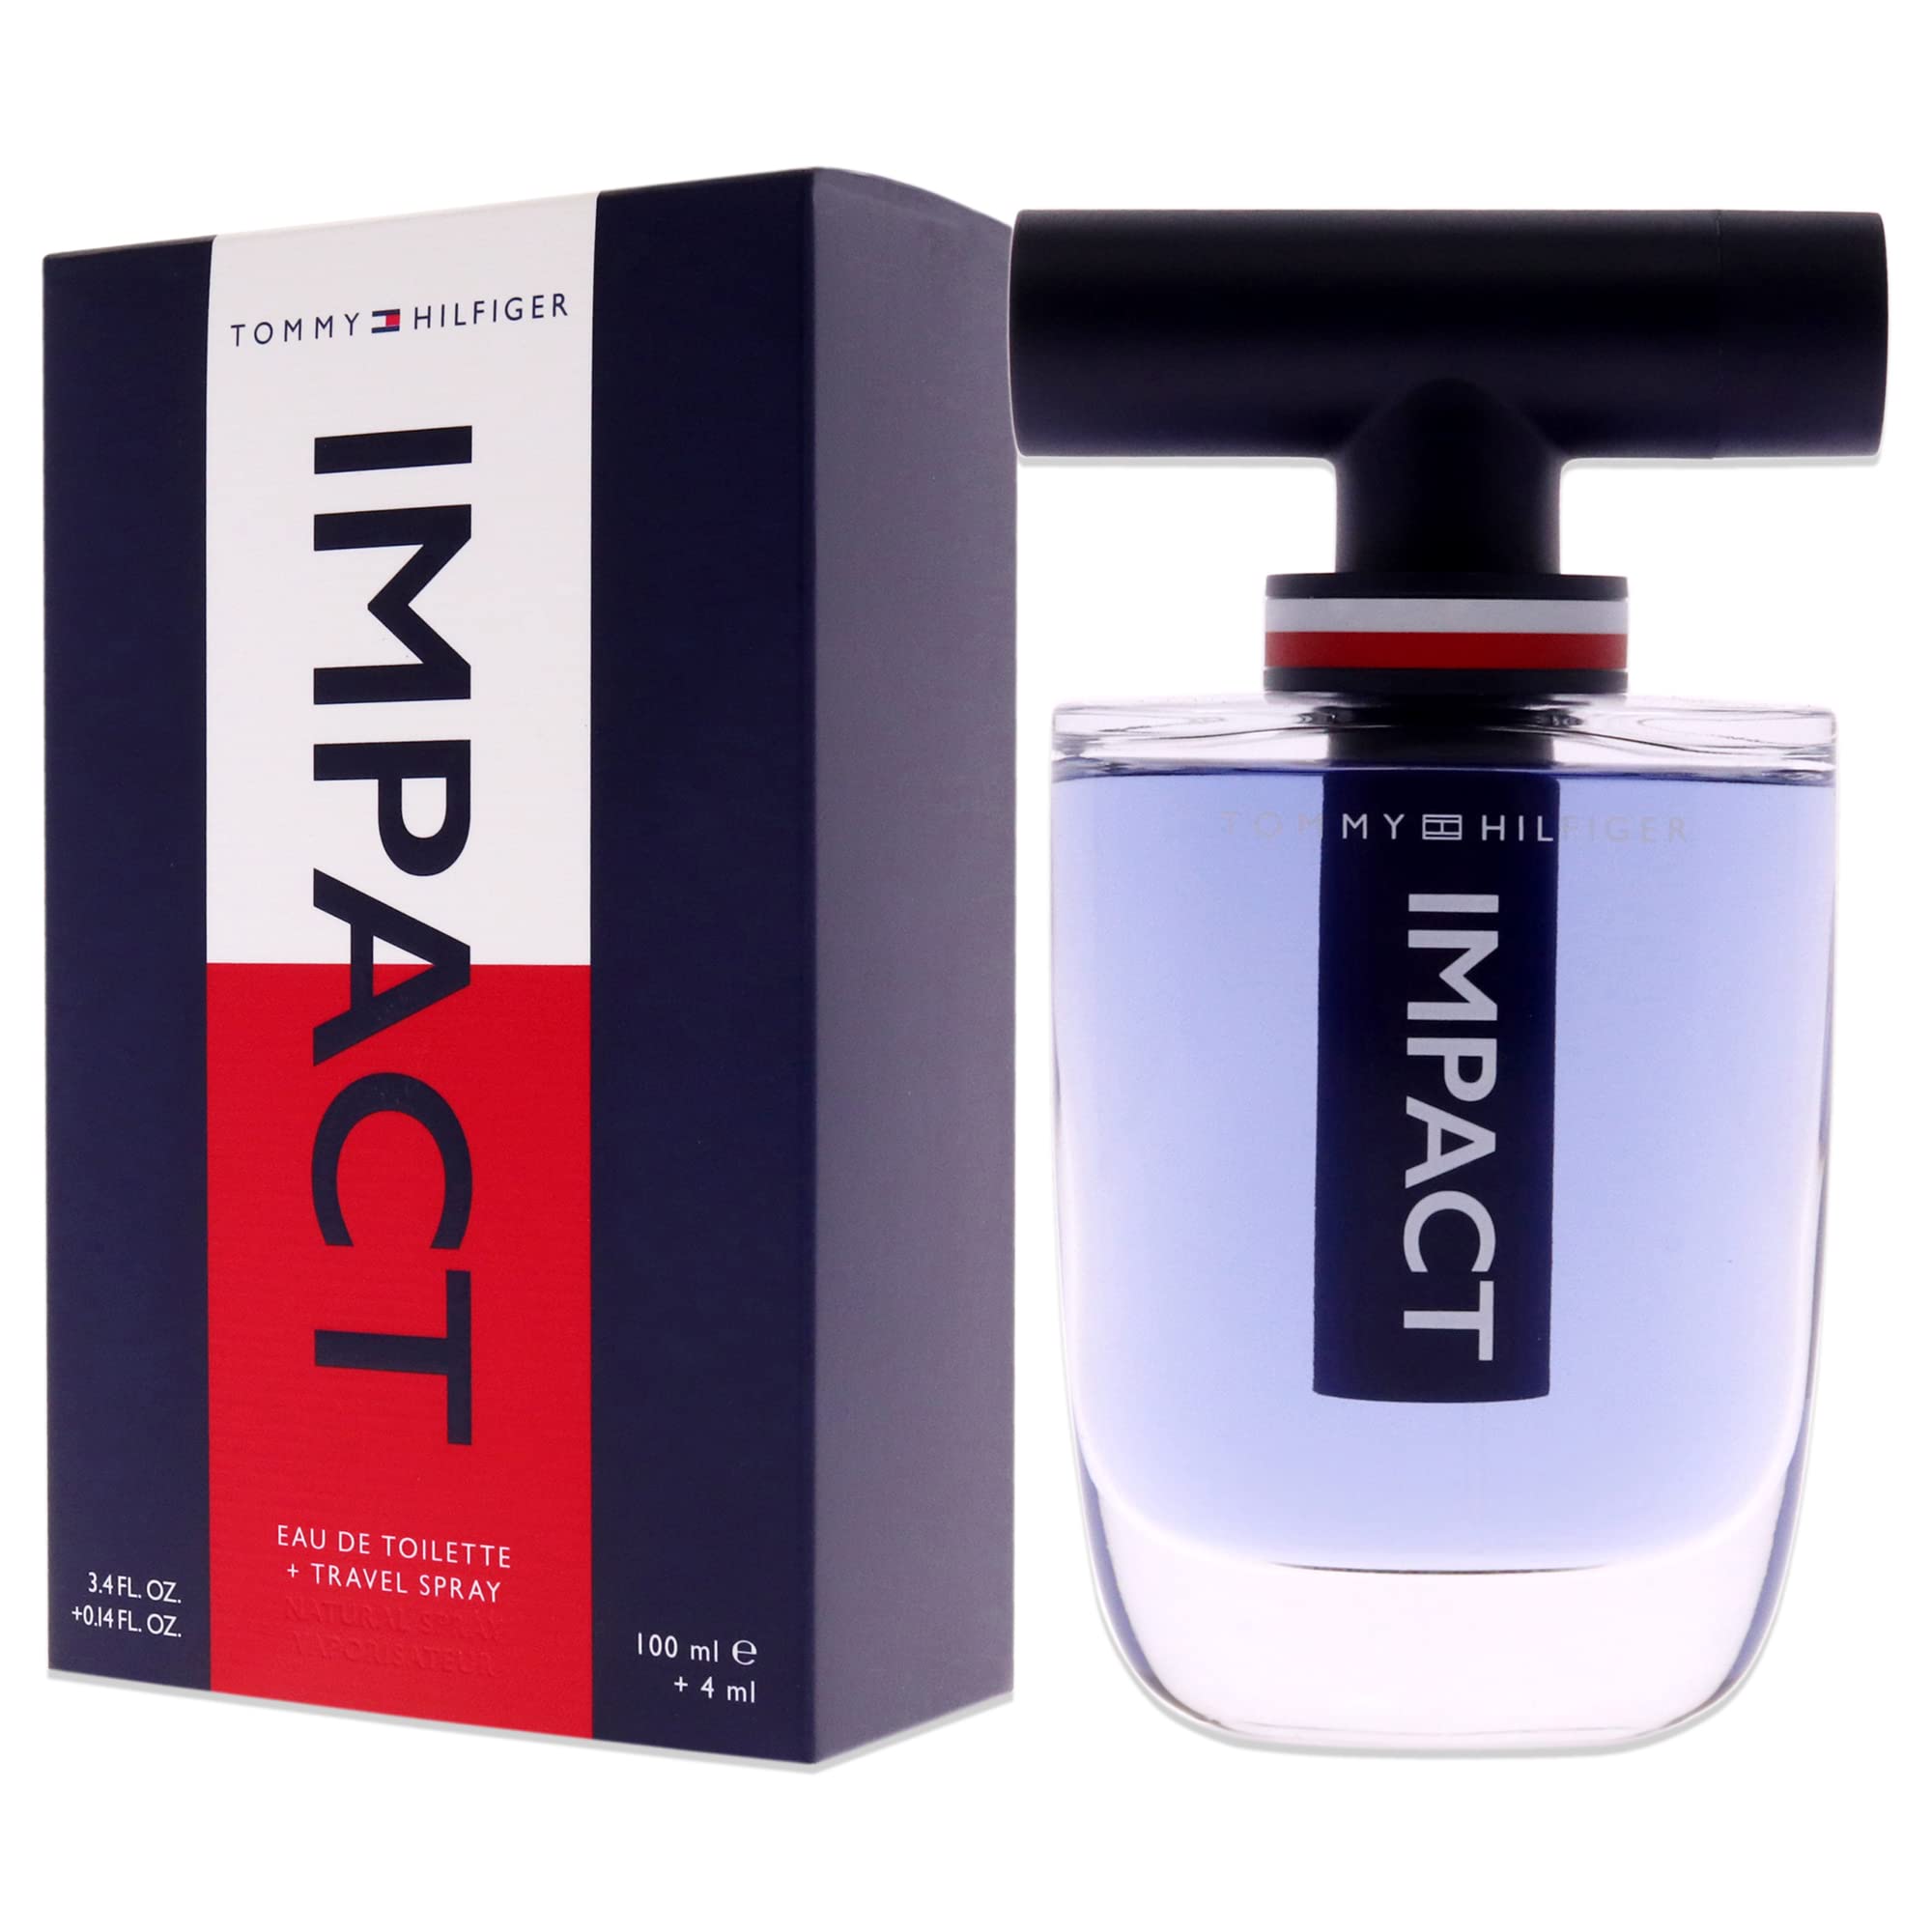 Tommy Hilfiger Impact Men 3.4oz EDT Spray, 4ml (Mini) Travel Spray 2 Pc Gift Set